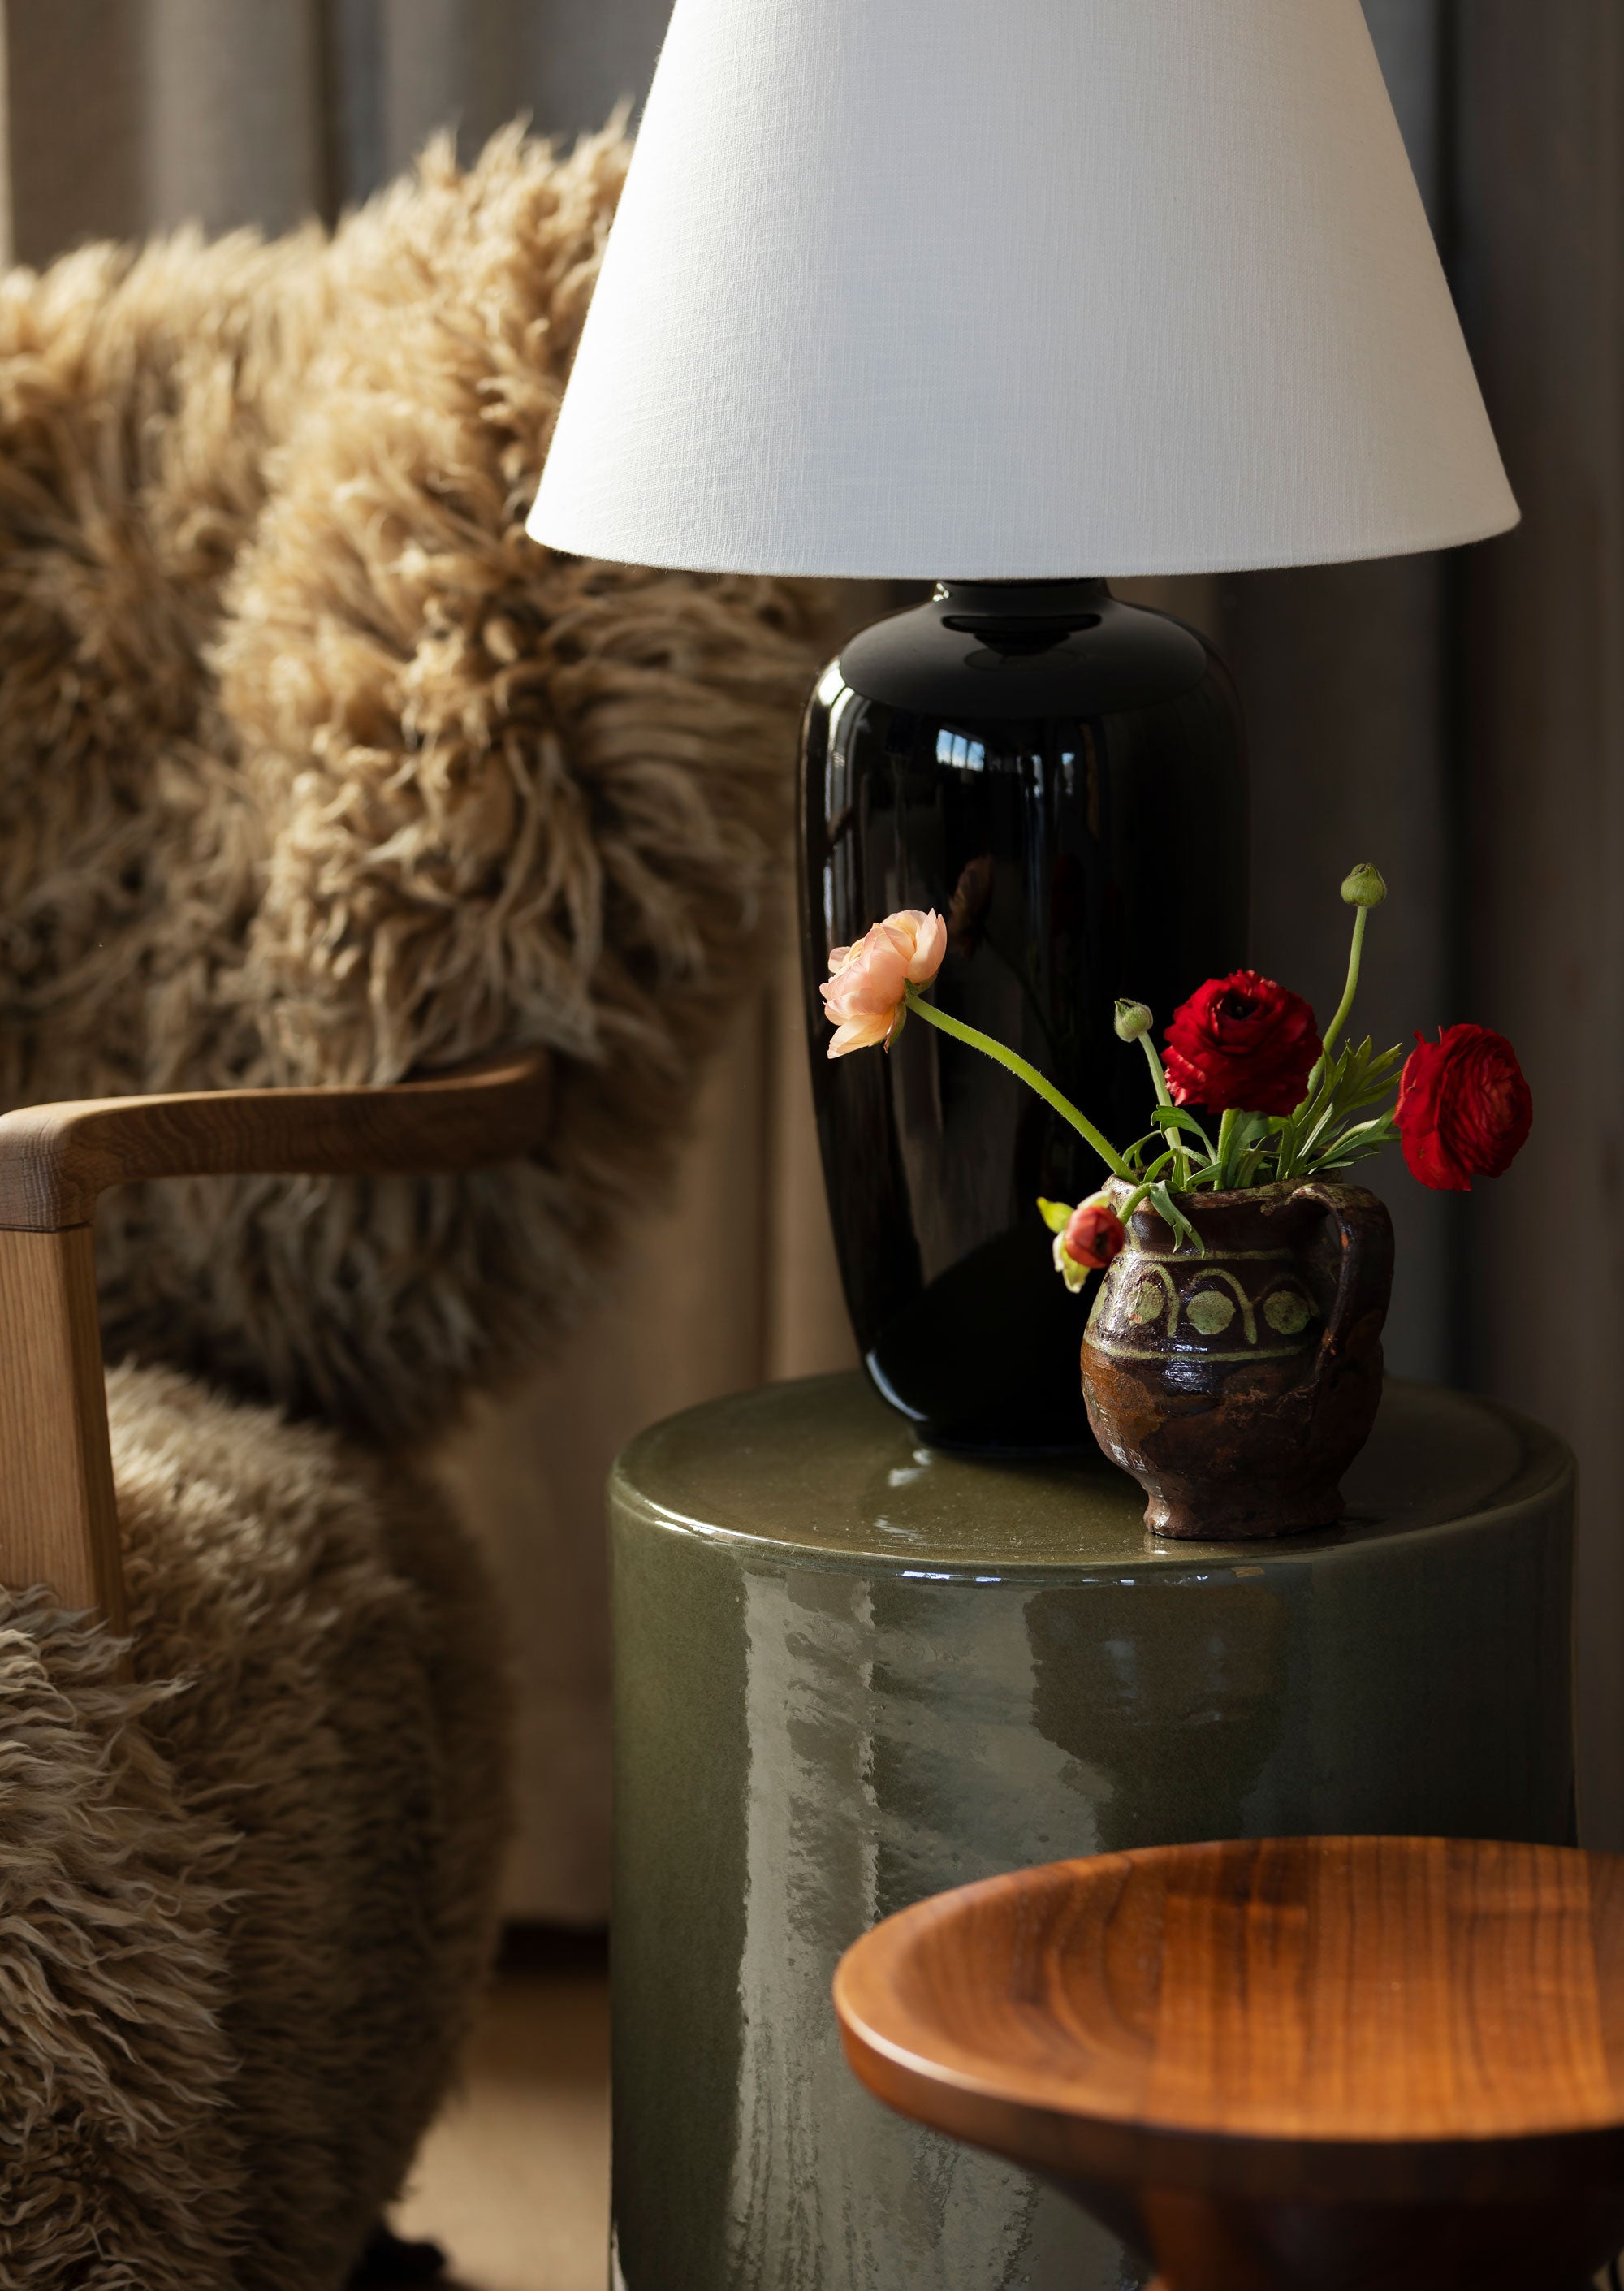 2. Hytte interiør inspirasjon: Sidebordet og lampen i glasert keramikk står i fin kontrast til lenestolen i saueull. Miks gjerne grove og polerte materialer og legg litt ekstra omtanke i detaljene.